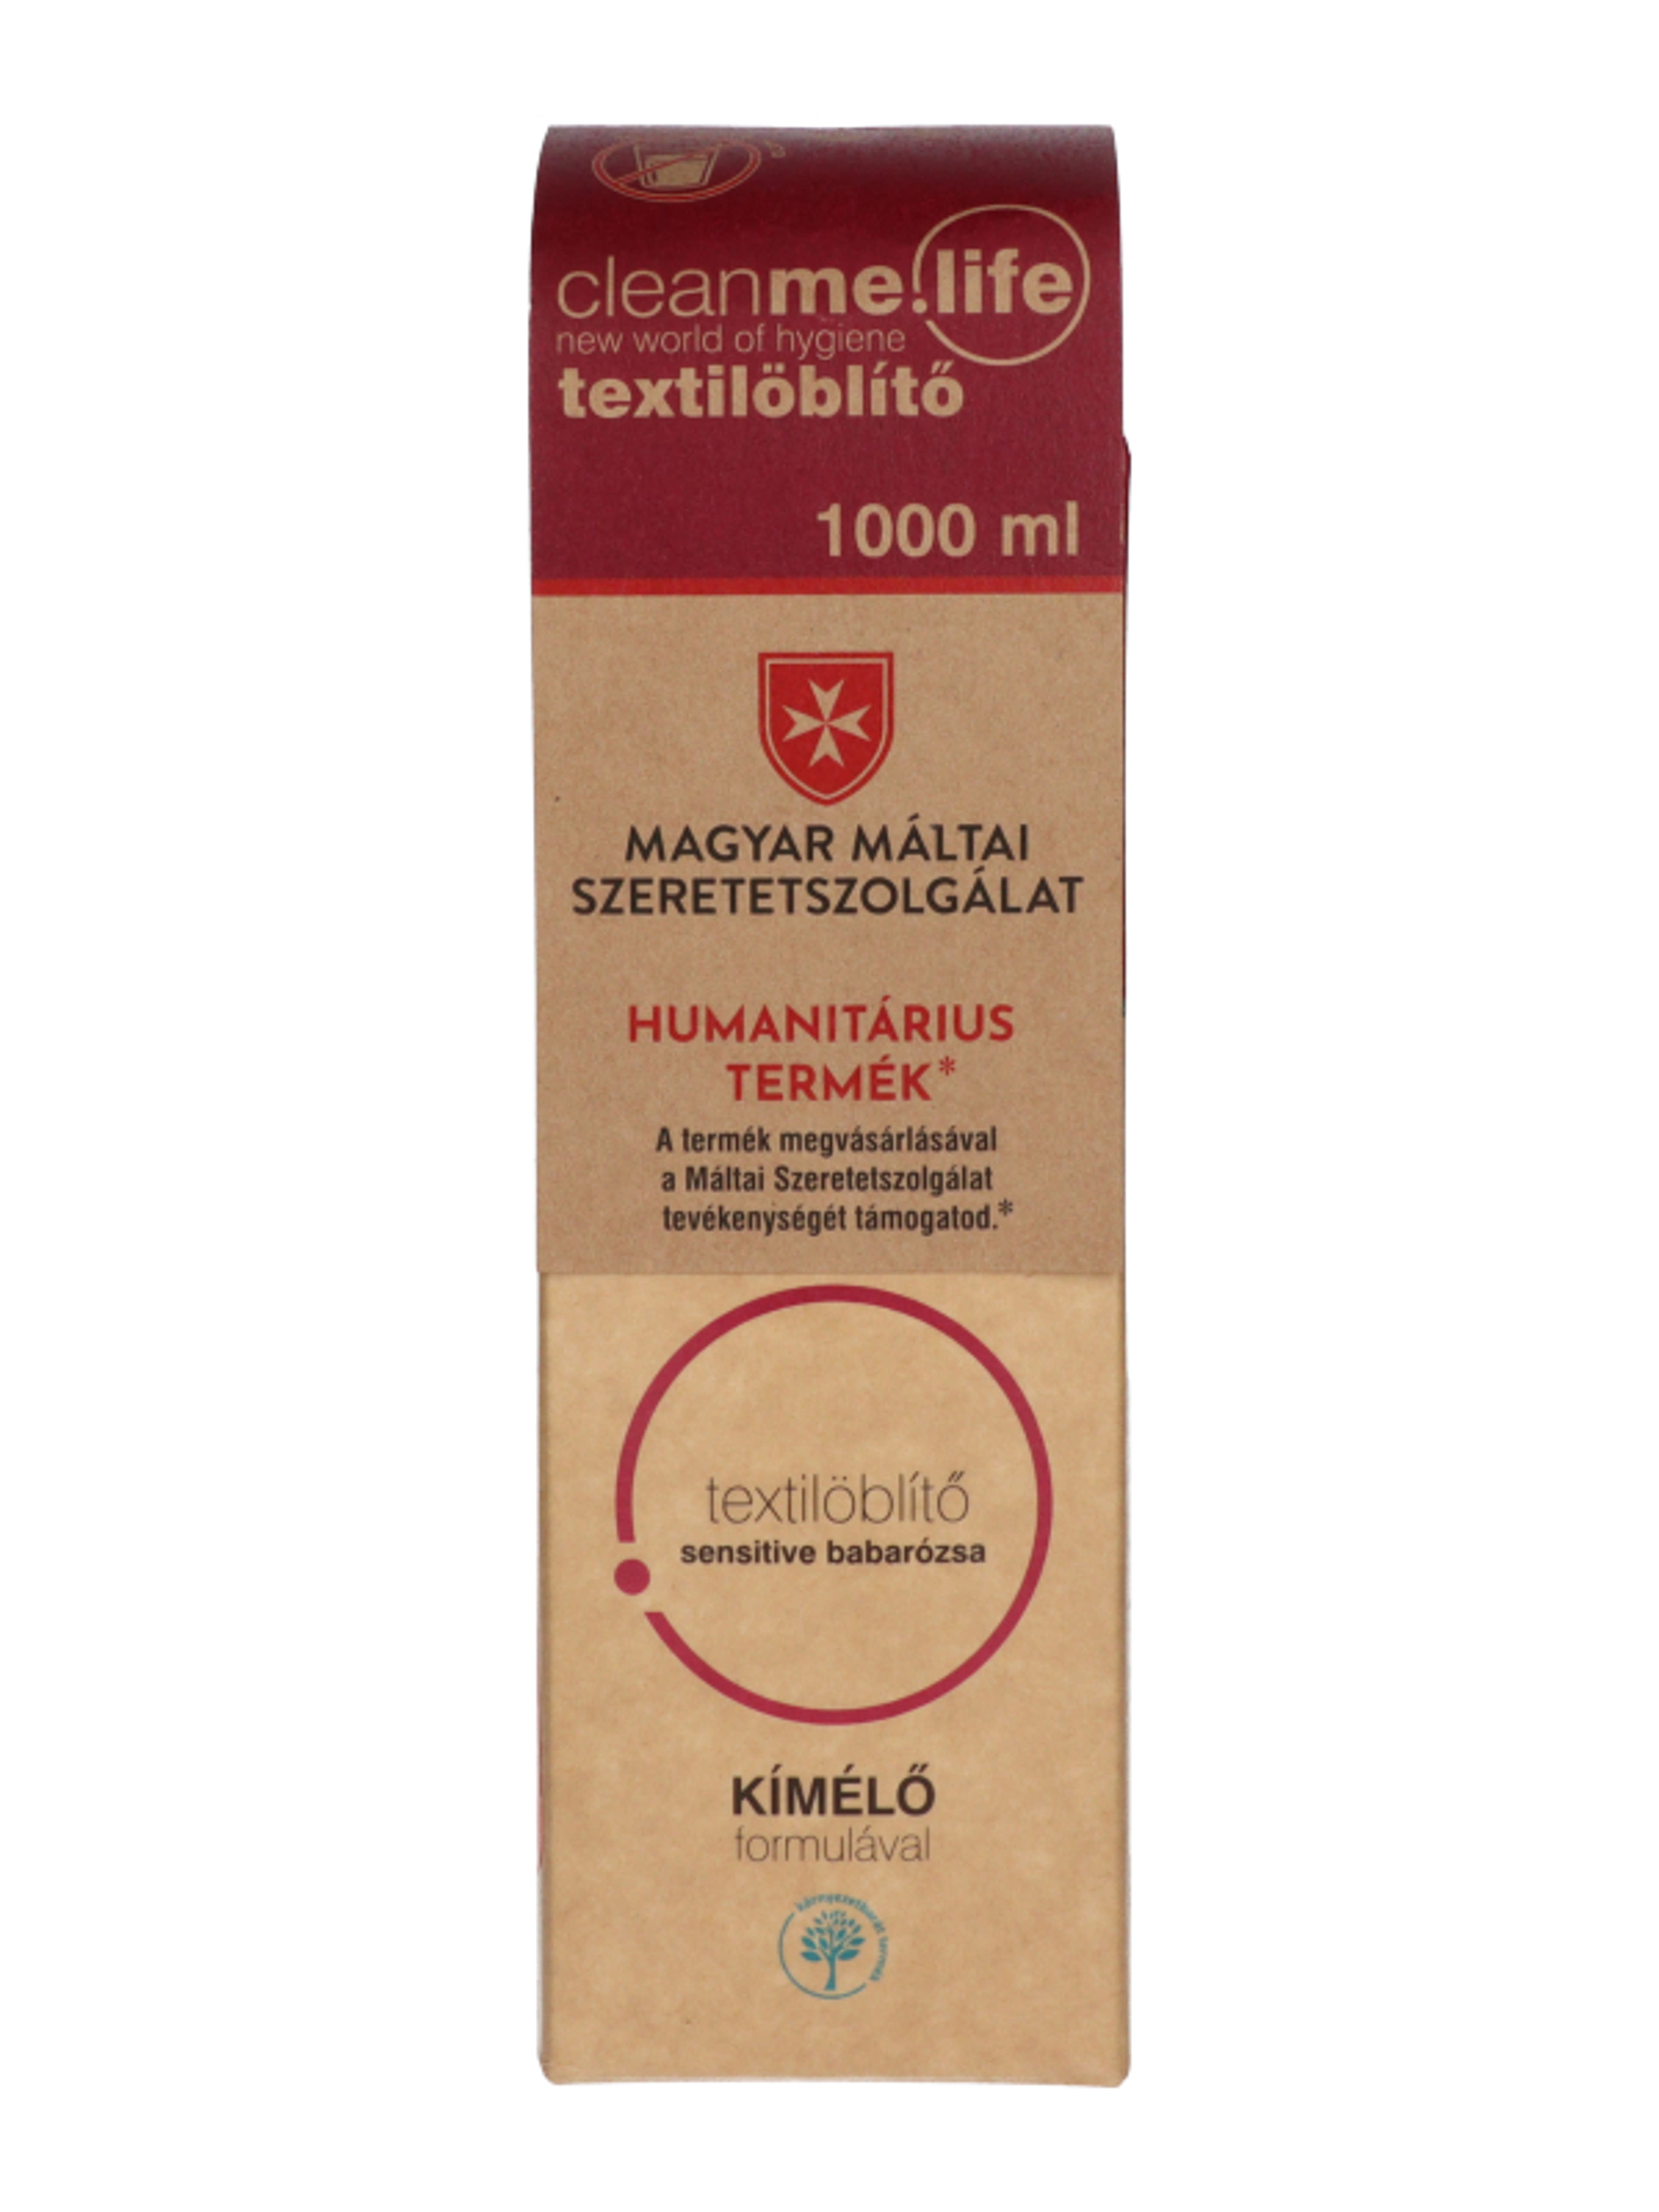 Cleanme Sensitive textilöblítő babarózsa illattal - 1000 ml-2